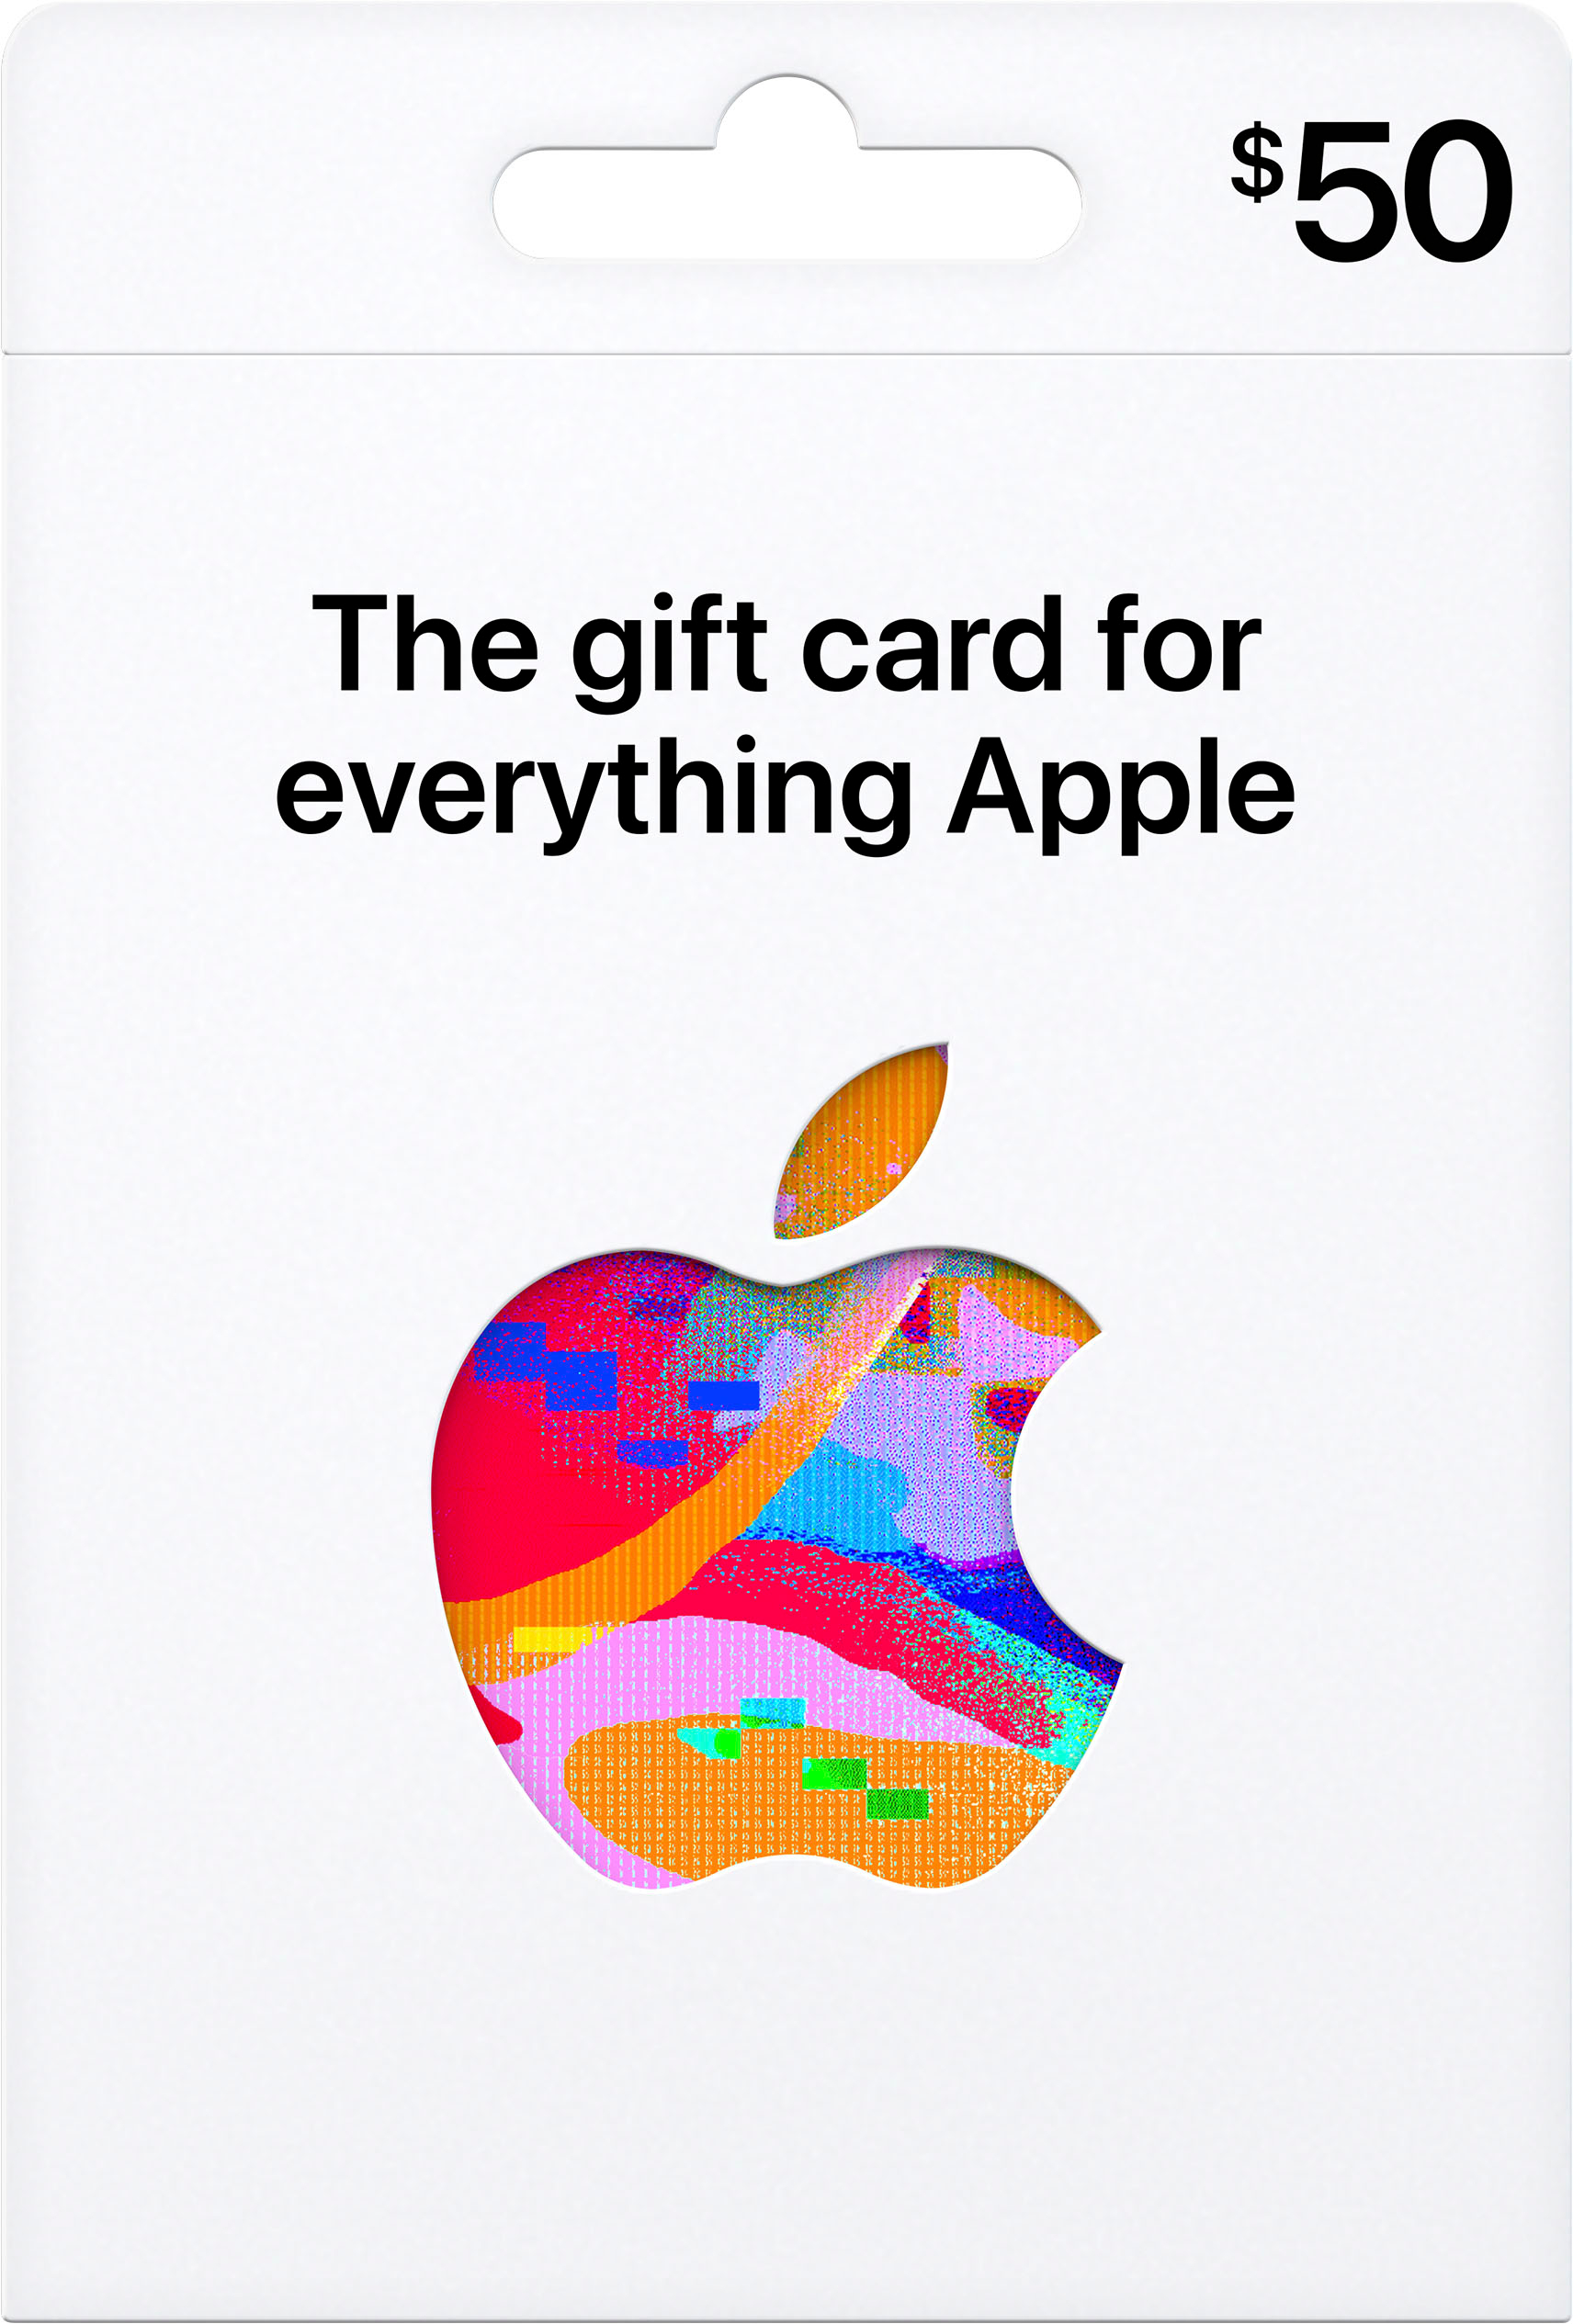 Apple Gift Card offer